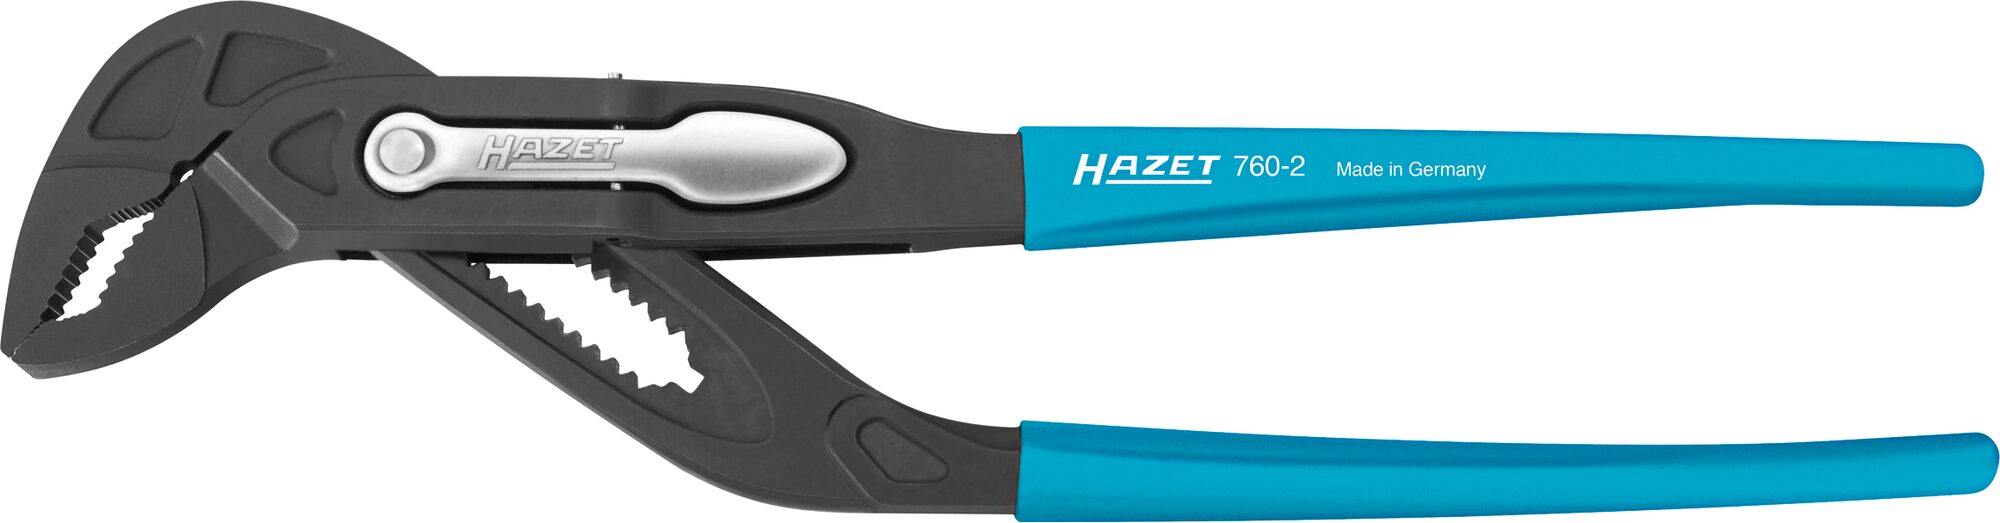 HAZET Universal-Zange 760-2 · Für Rechtshänder